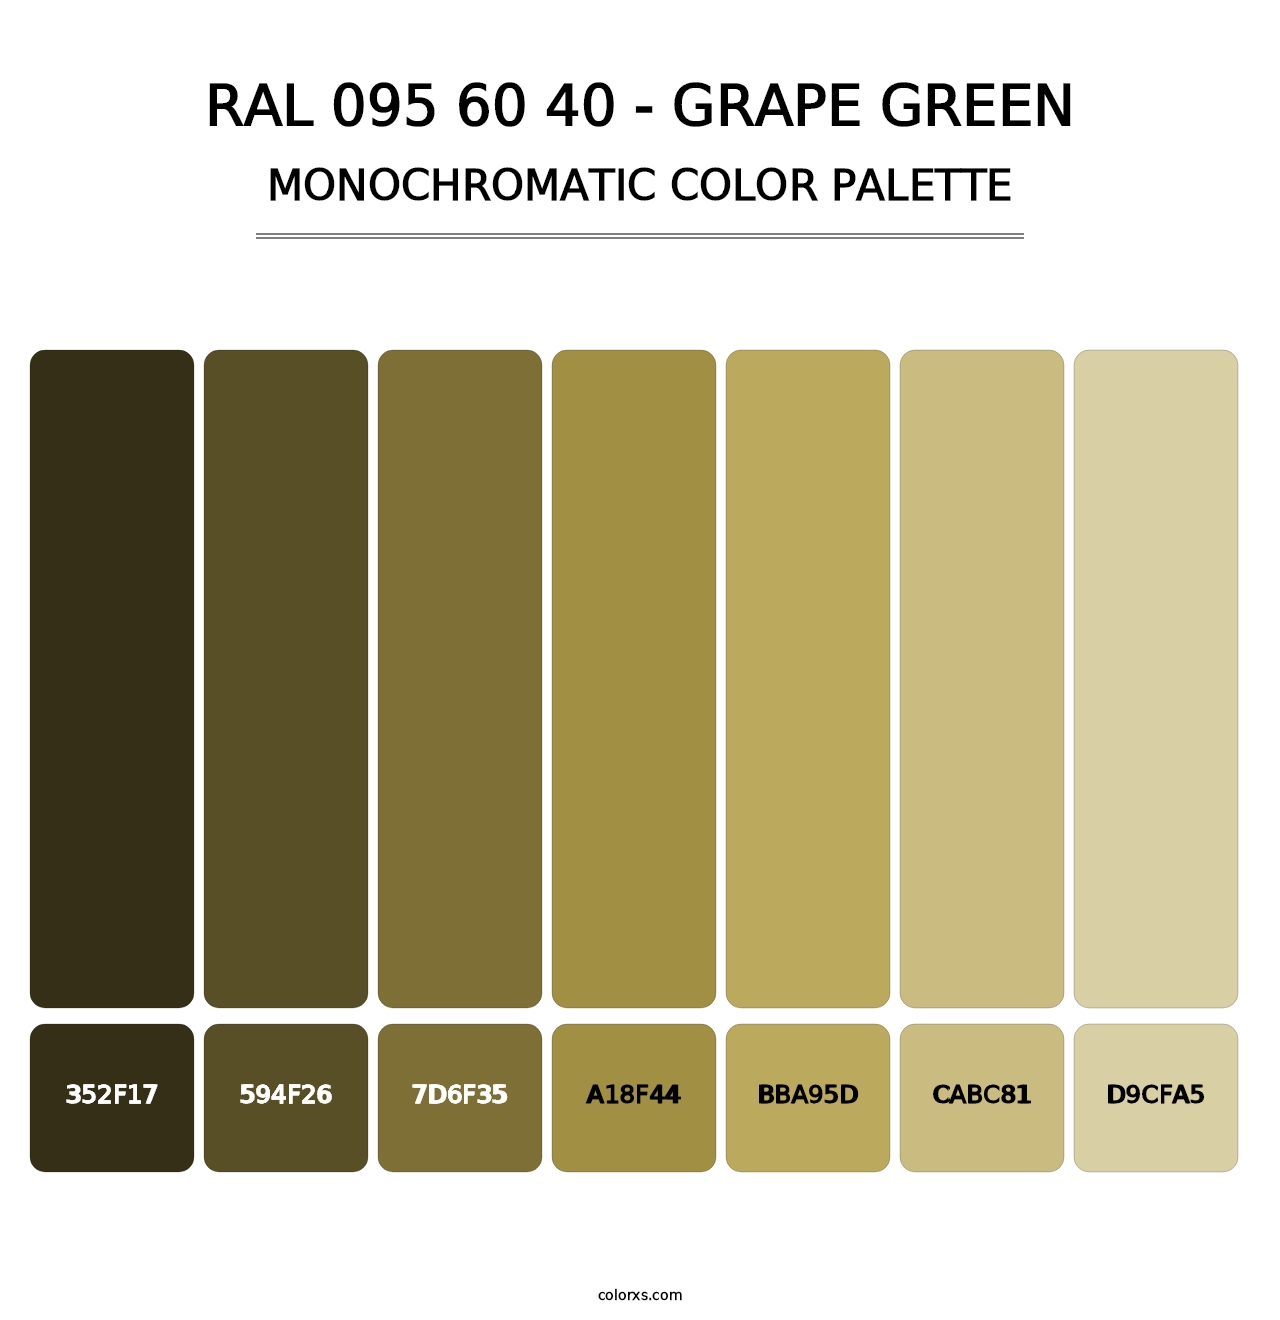 RAL 095 60 40 - Grape Green - Monochromatic Color Palette